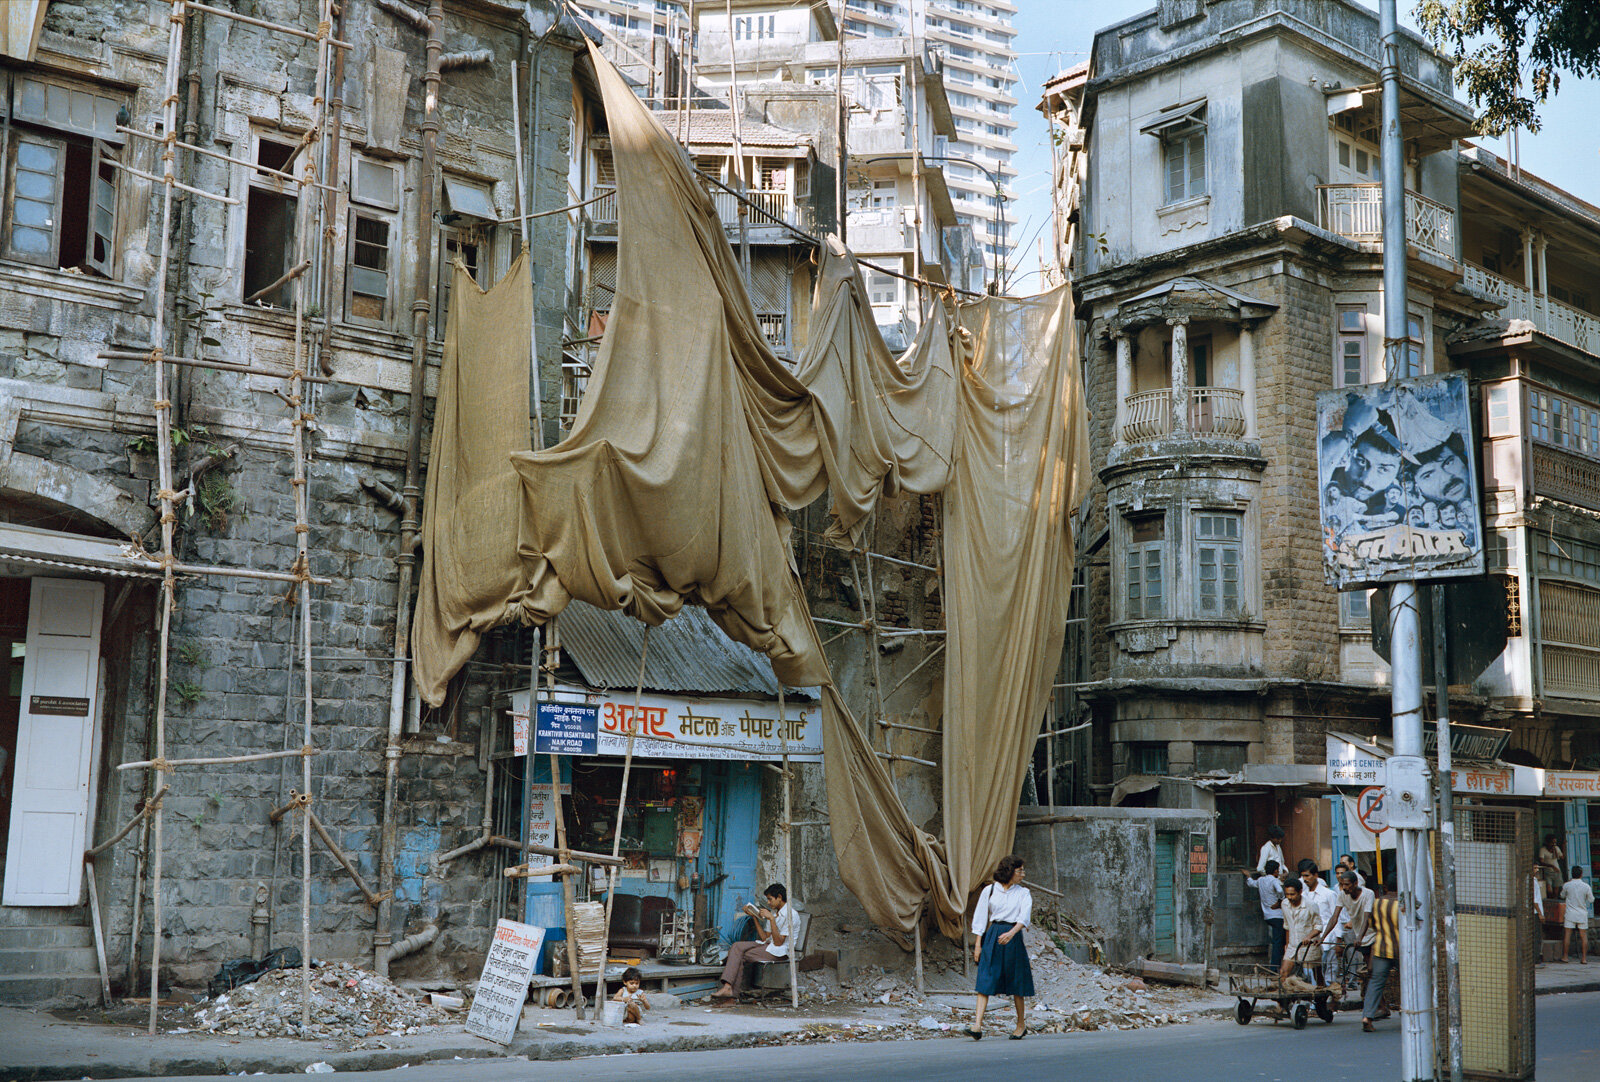  Bombay 1989 